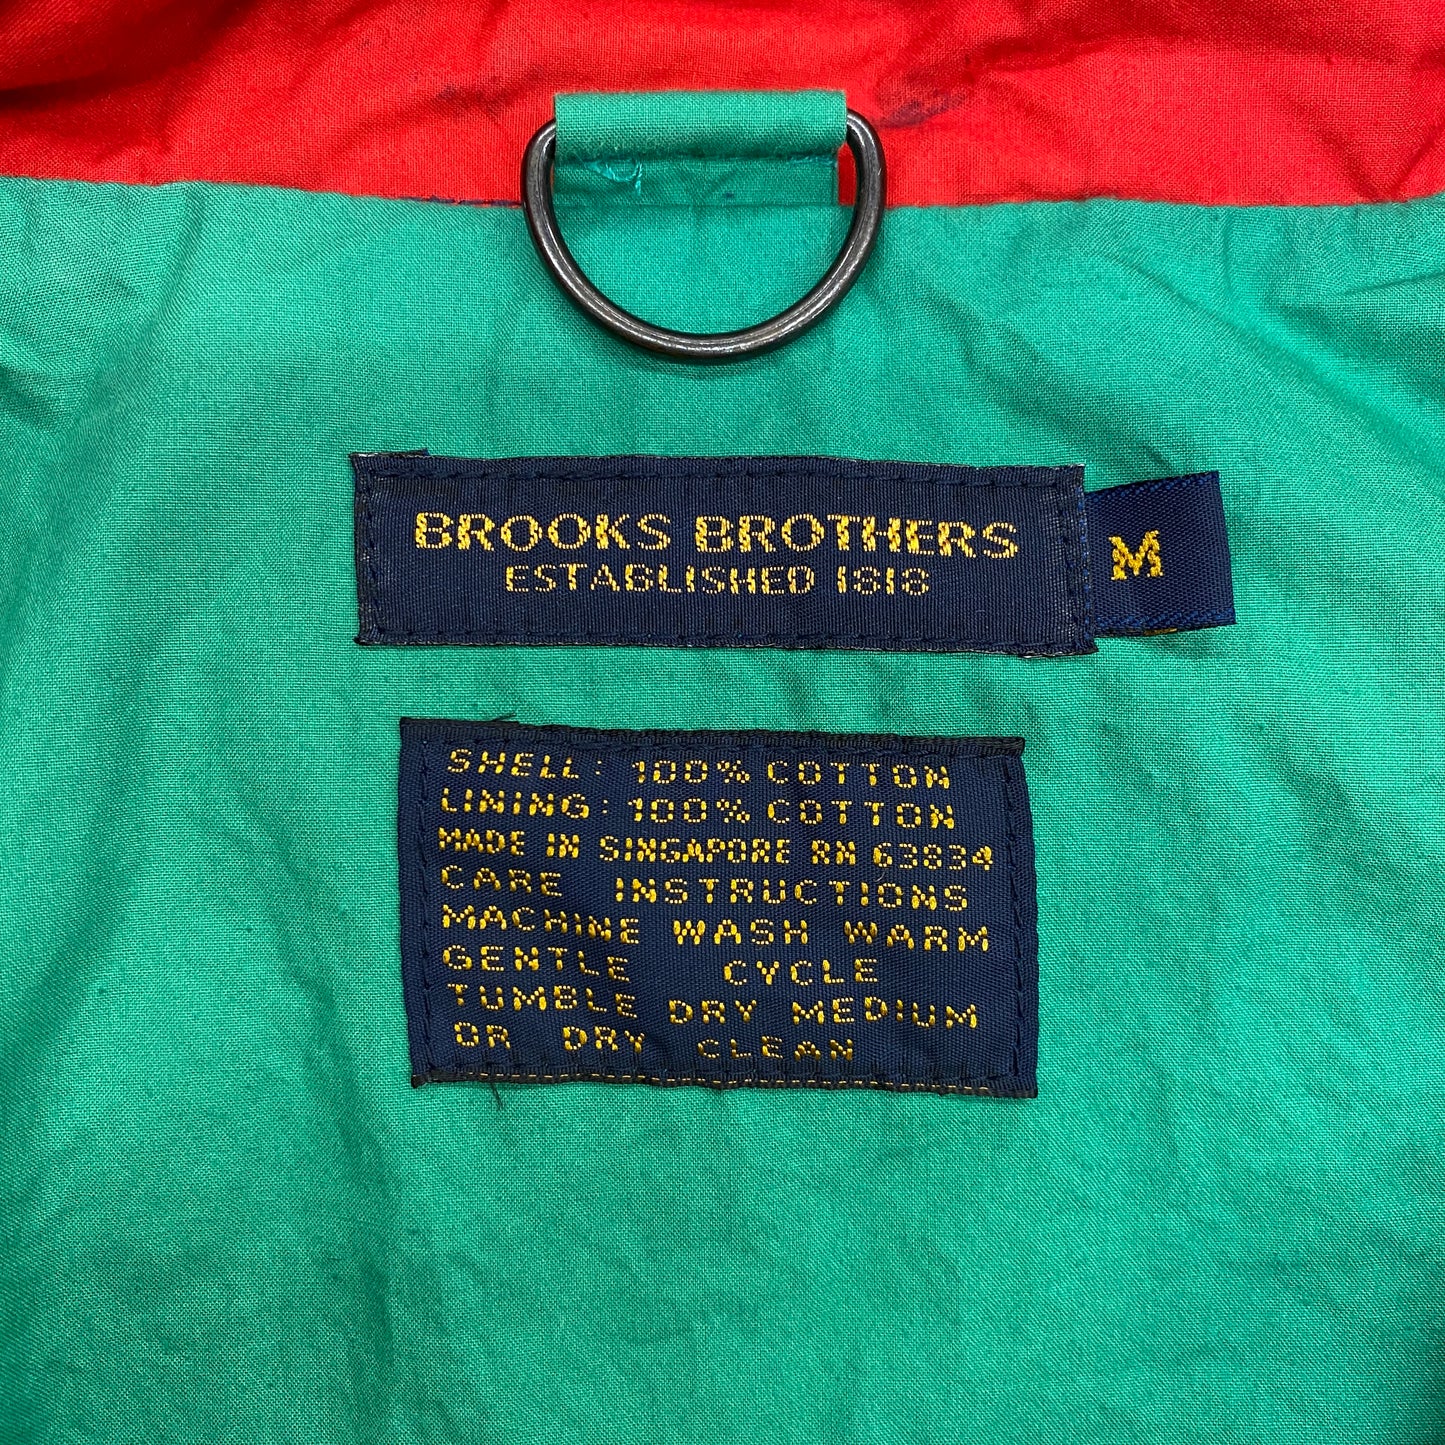 Vintage 1980s Brooks Brothers Navy & Teal Windbreaker - Size Medium